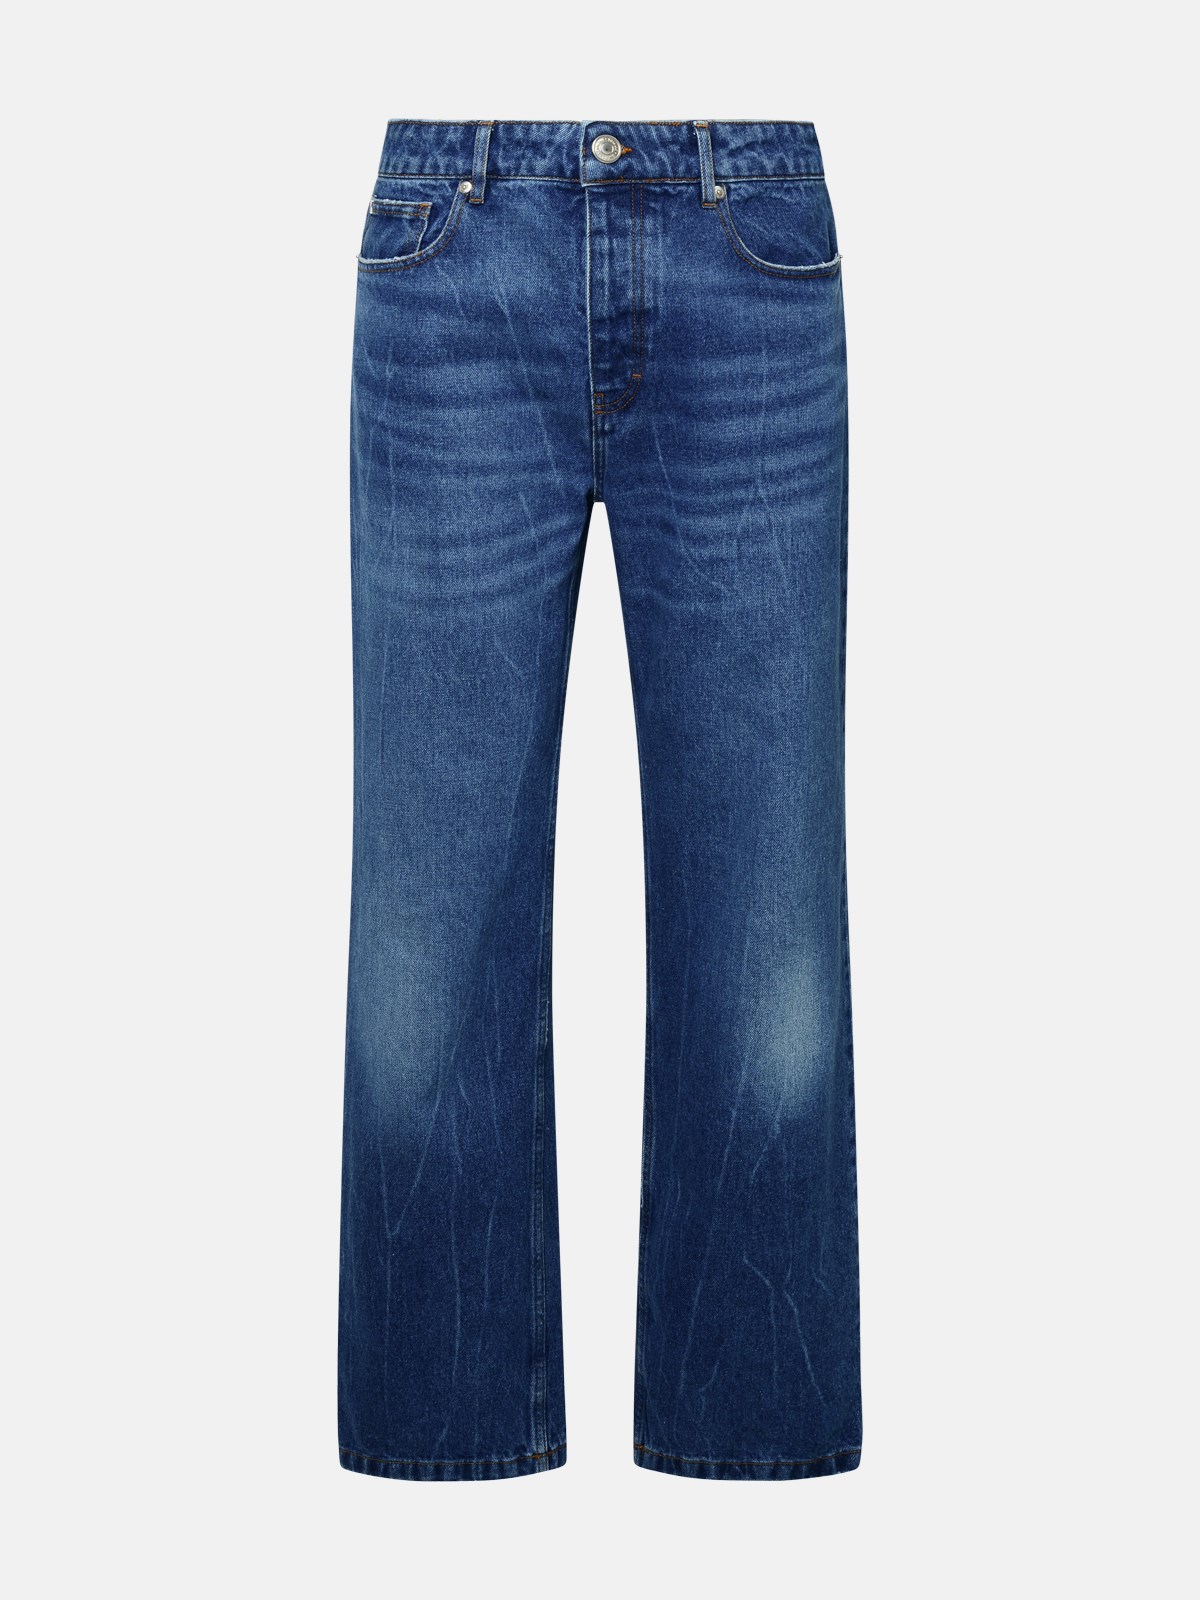 Ami Alexandre Mattiussi Kids' Blue Cotton Jeans